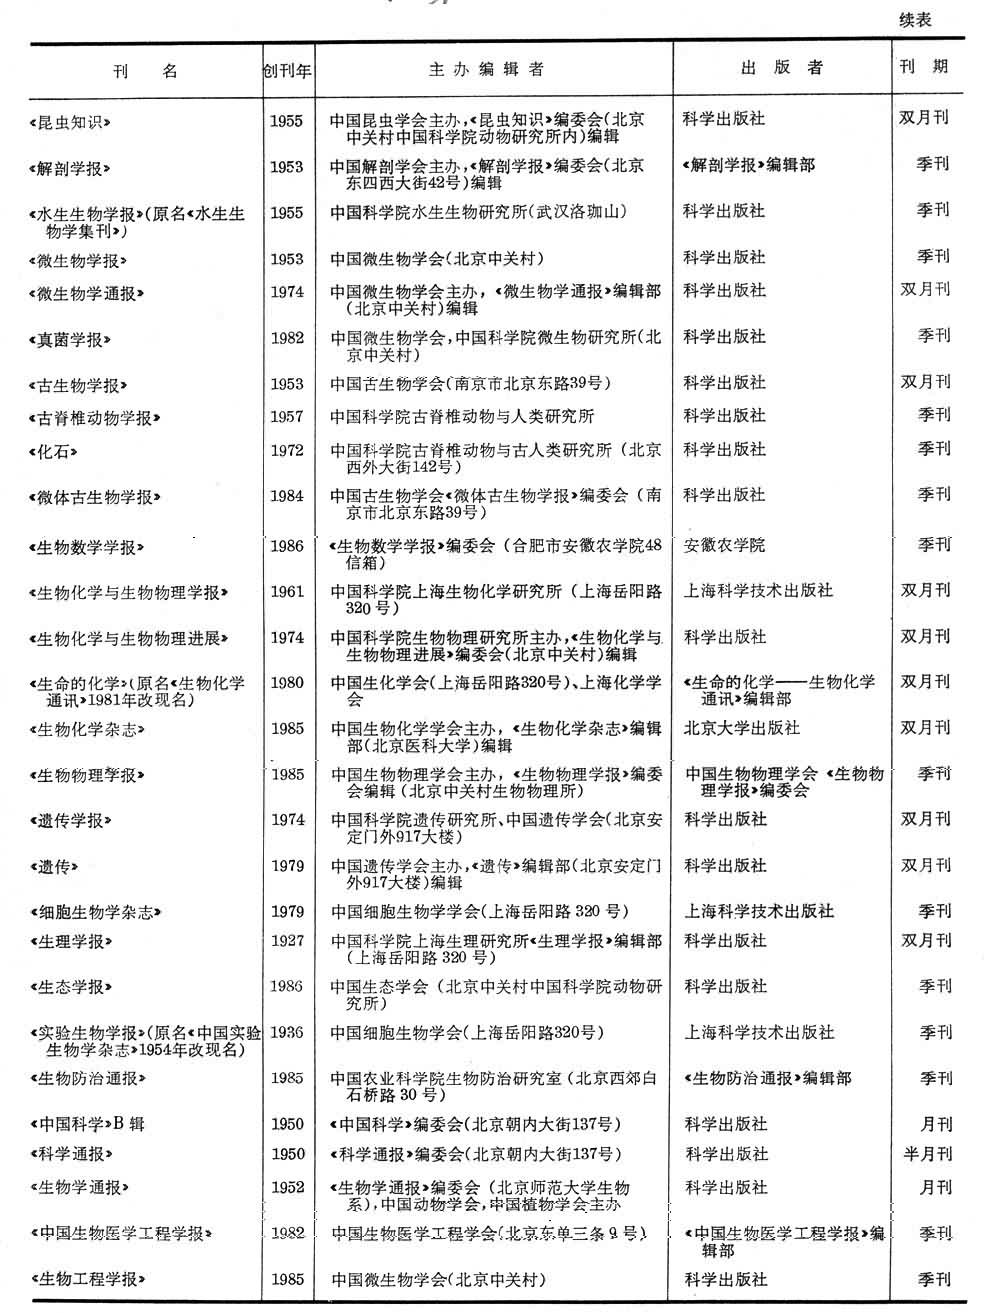 中国期刊网,cnki,音标,读音,翻译,英文例句,英语